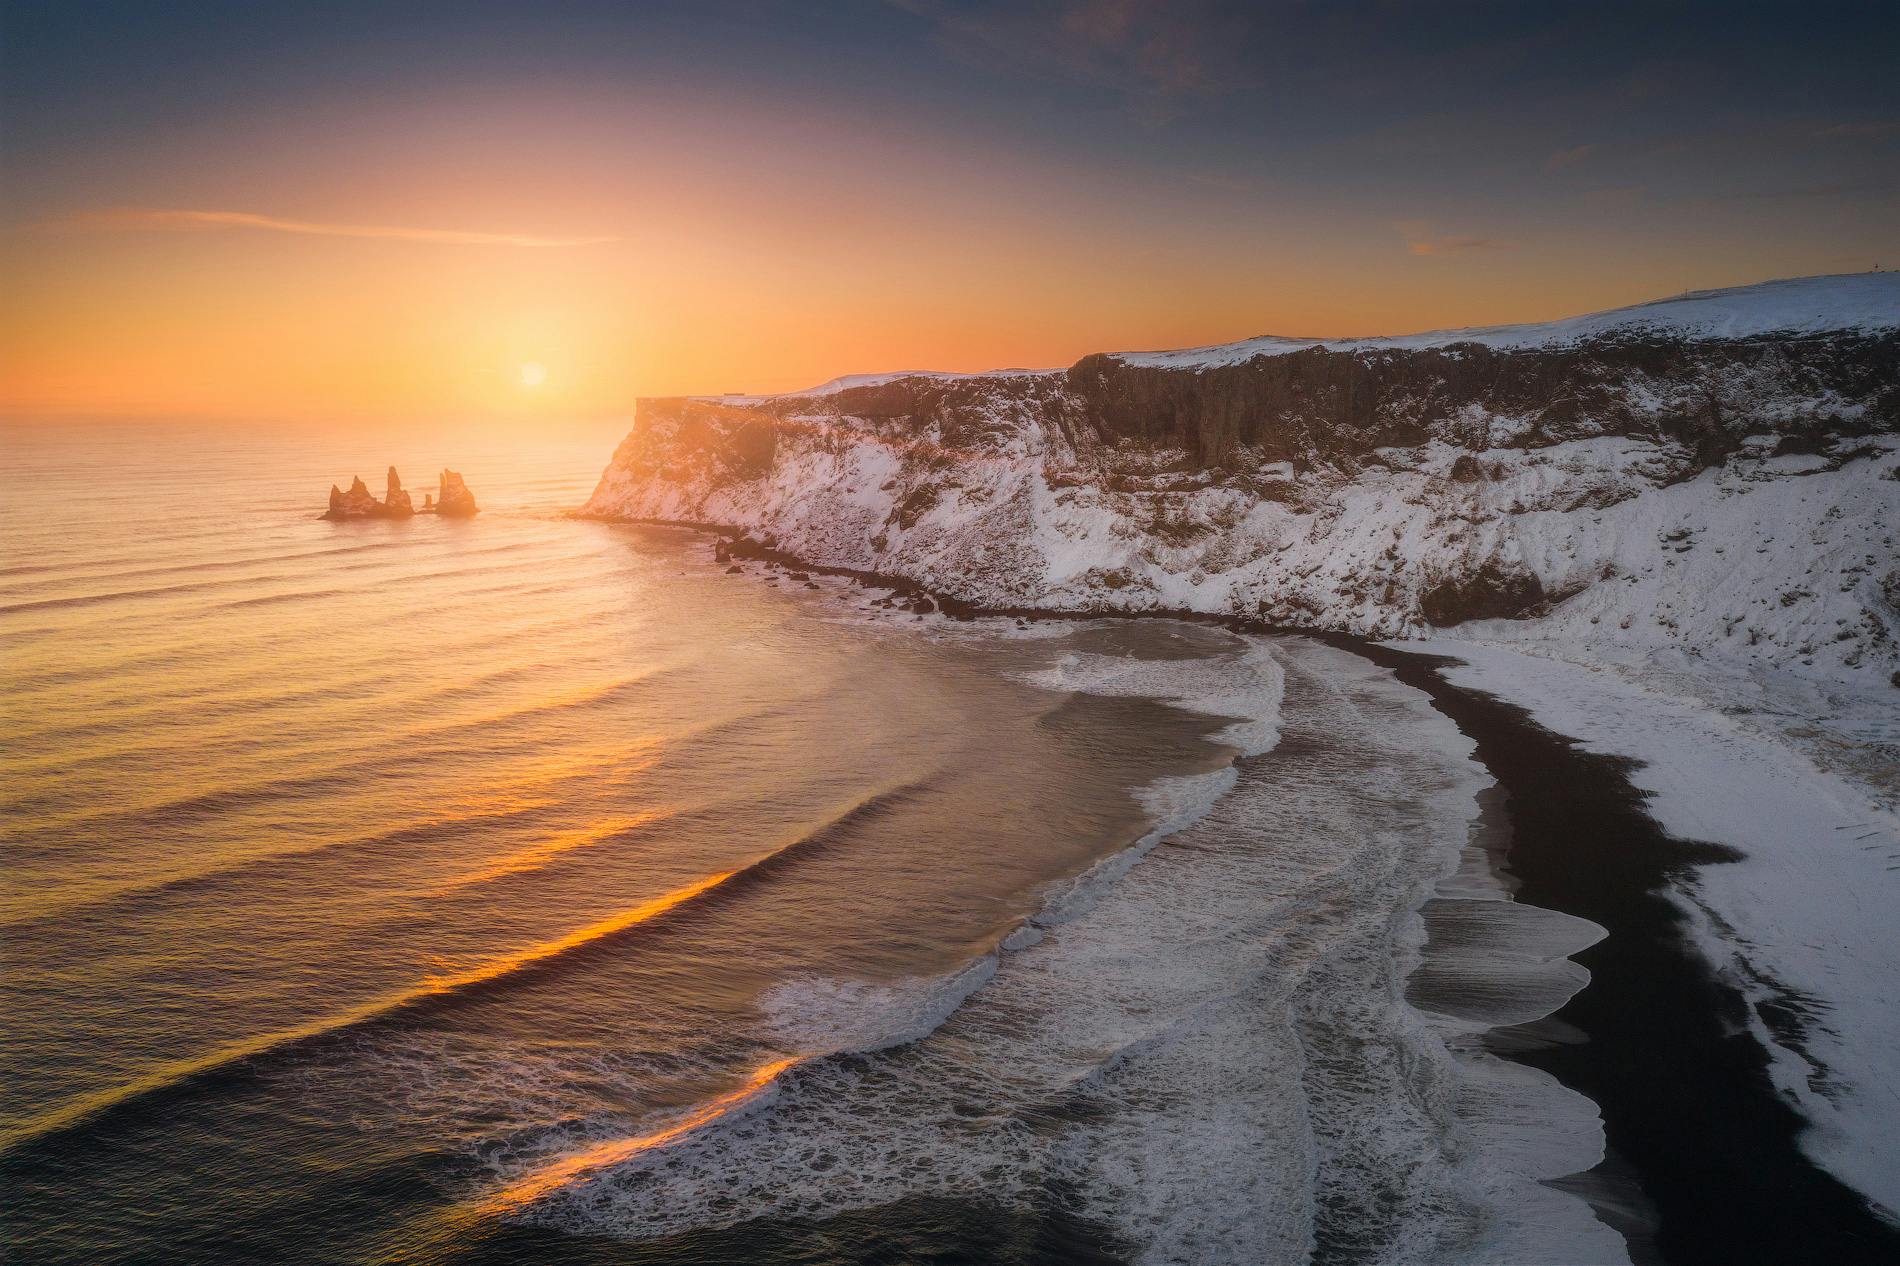 Le soleil se couche sur la magnifique côte sud de l'Islande.